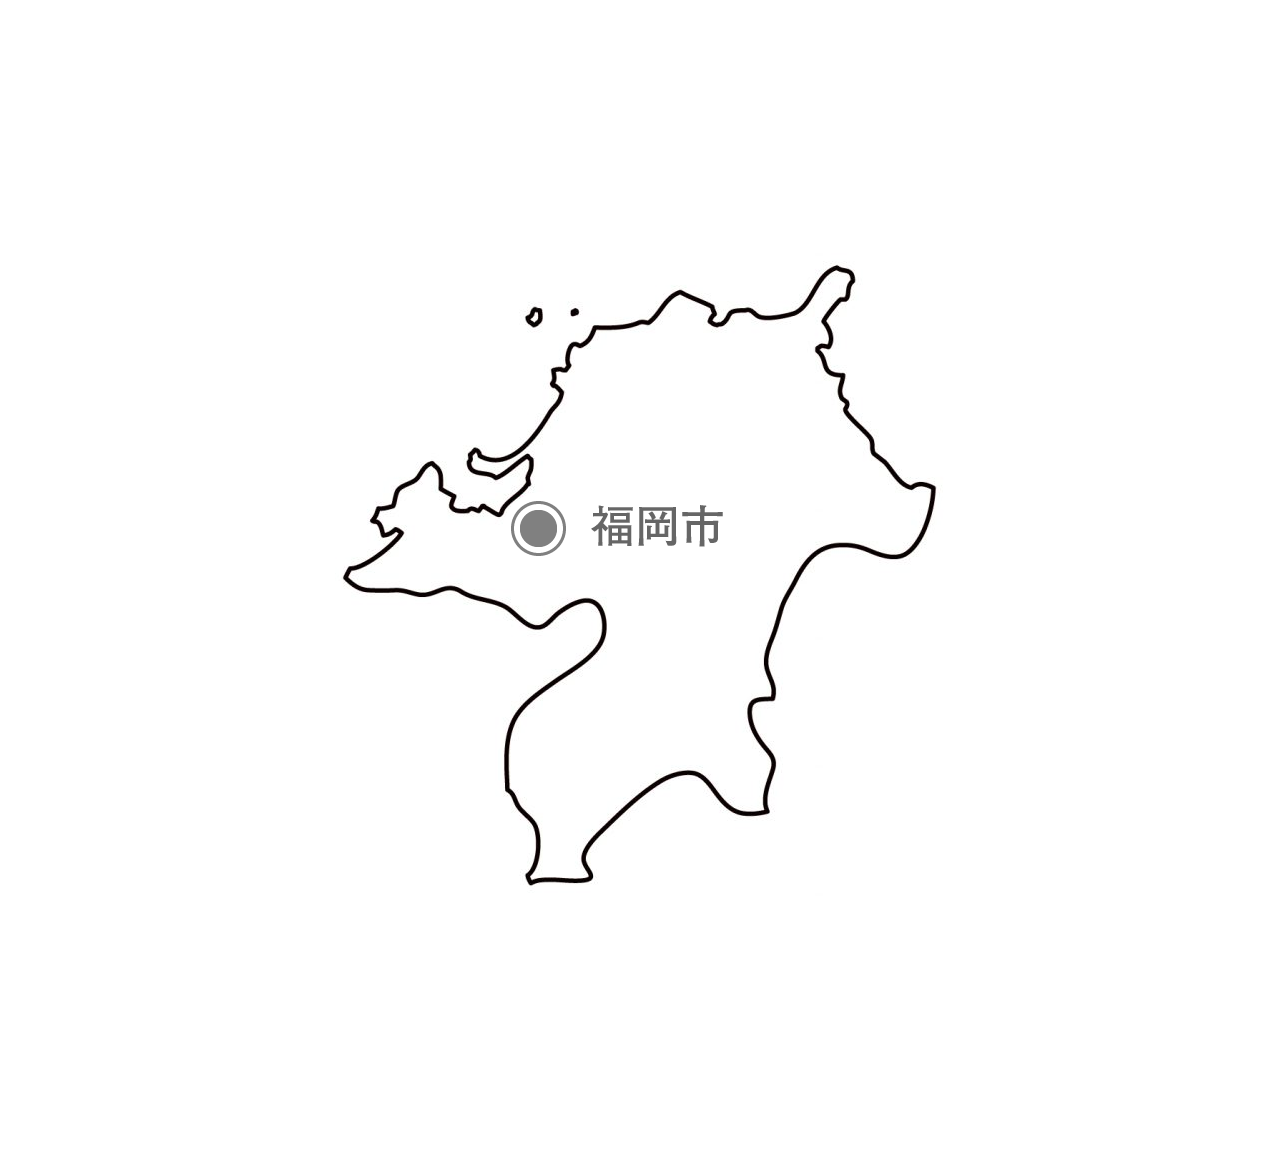 福岡県の白地図イラスト無料素材集 県庁所在地 市区町村名あり